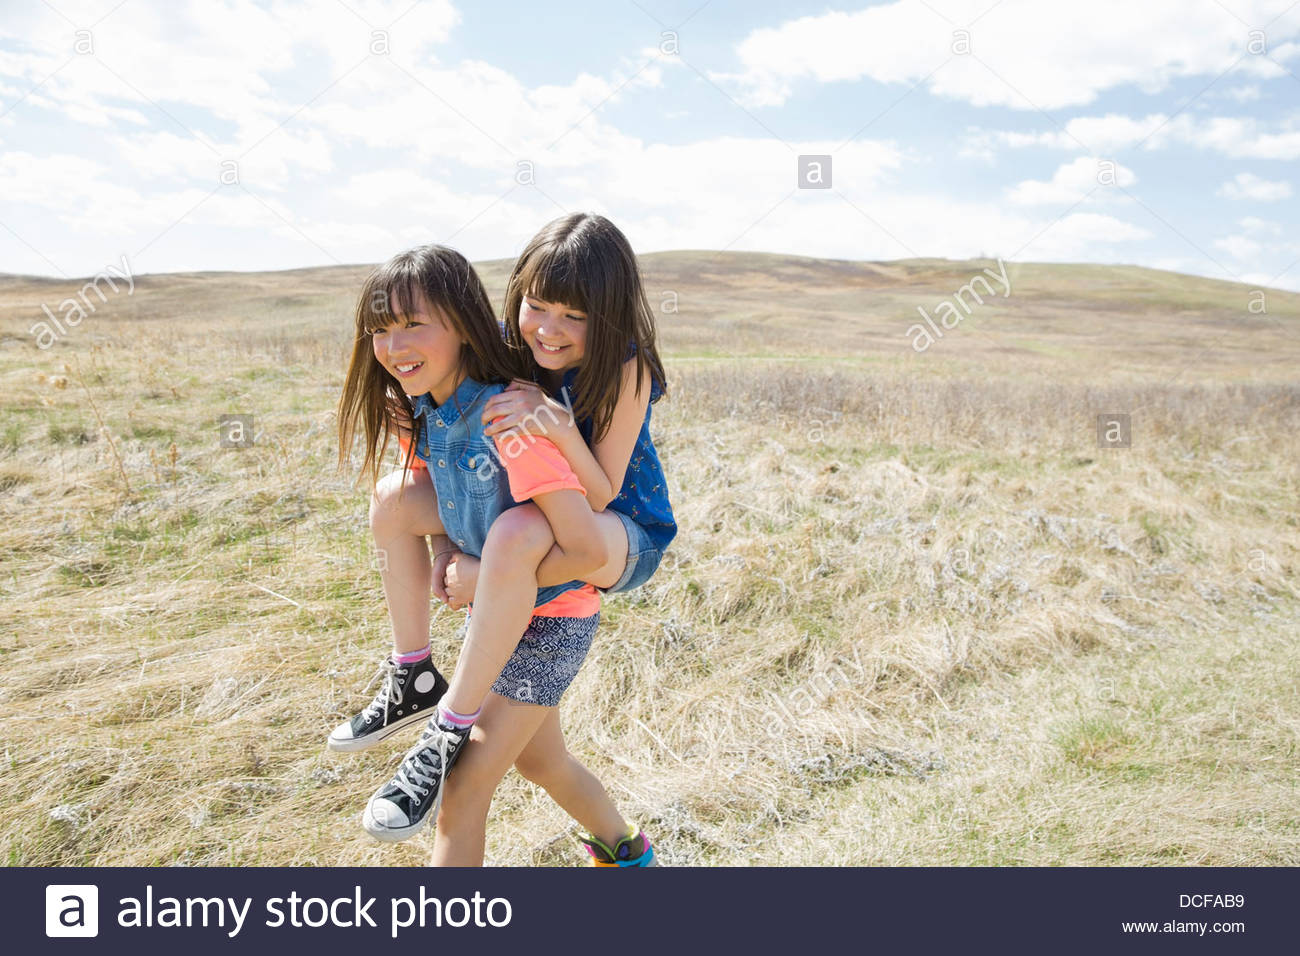 Little girl piggybacking female friend Stock Photo